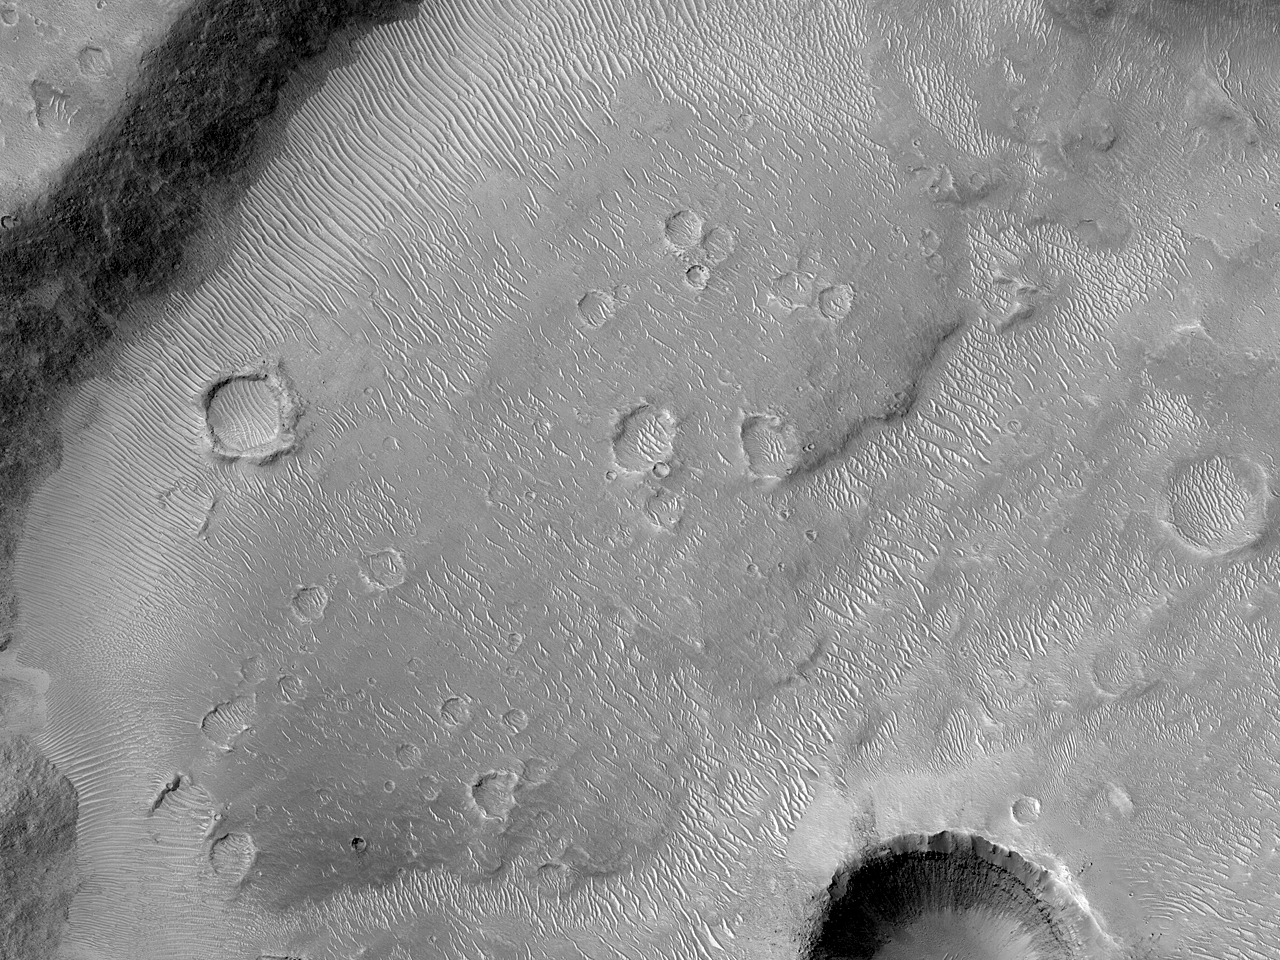 Crater faecibus repletus